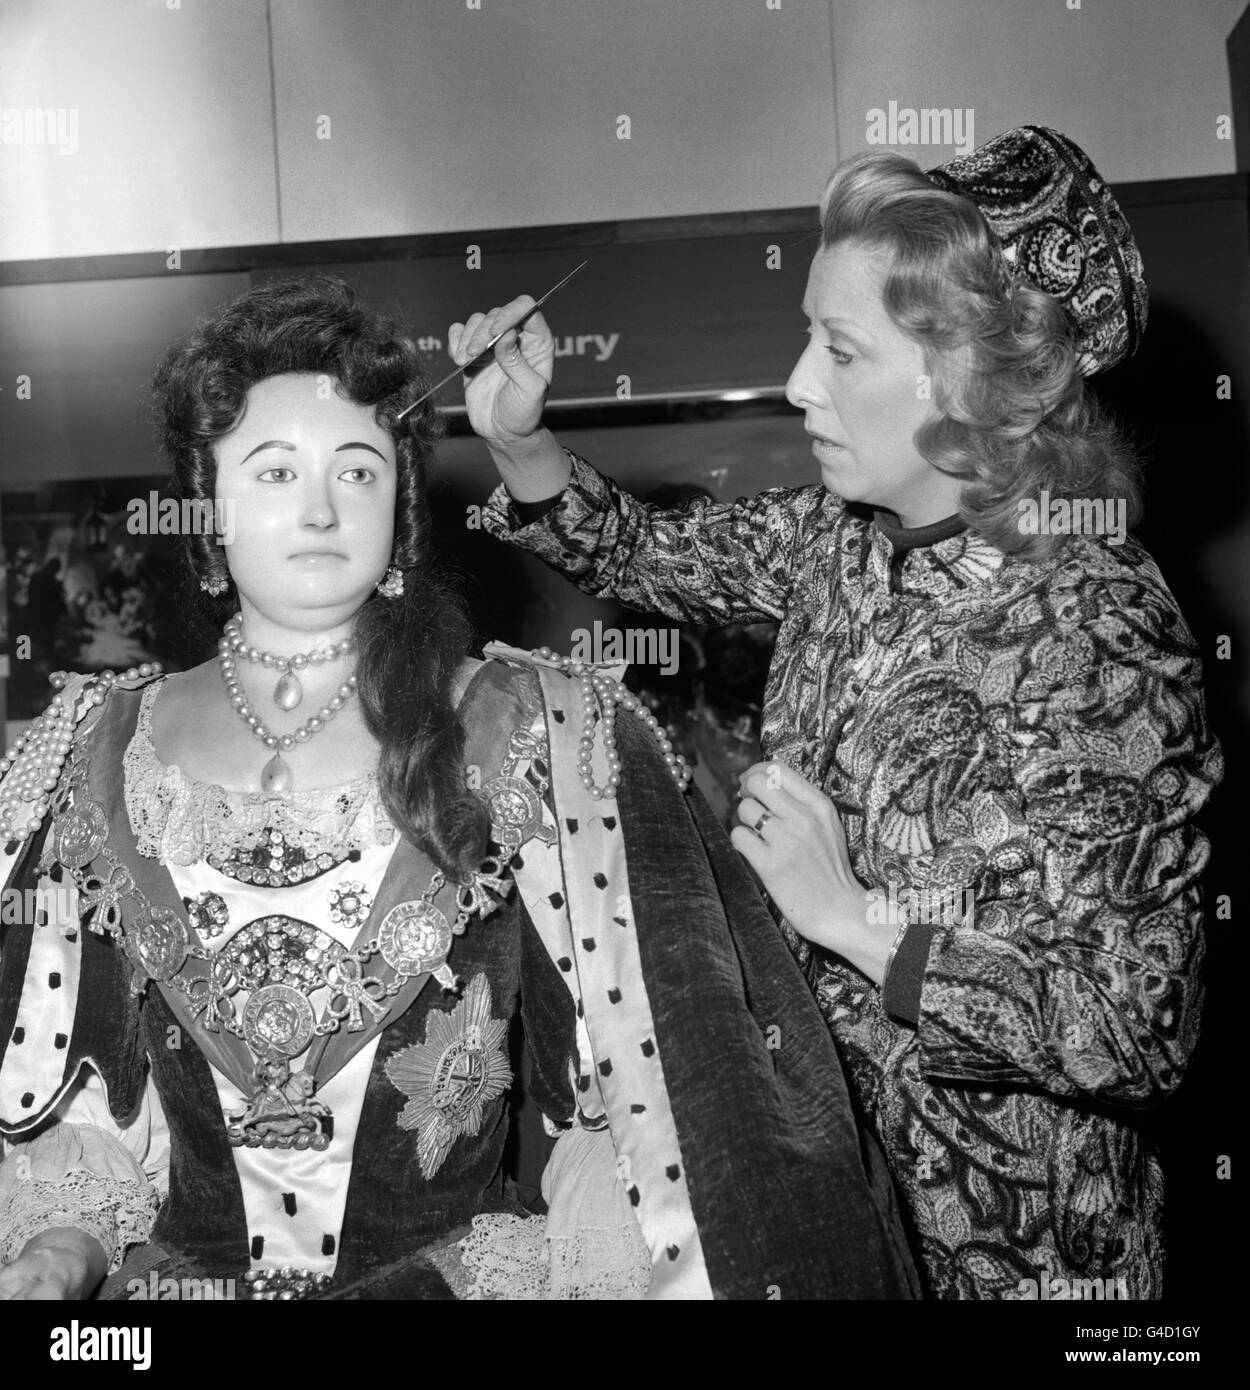 Die Schauspielerin Margaret Tyzack bearbeitet das Make-up auf dem Totenbild in Wachs von Königin Anne (die 1714 im Alter von 49 Jahren starb) im Norman Undercroft in Westminster Abbey, wo es eine Sammlung königlicher Bildnisse gibt. Margaret Tyzack, die für ihre Darbietung als Königin Anne in der Fernsehserie „The First Churchills“ einen Preis für die Schauspielerin des Jahres erhielt, wurde eingeladen, bei der Verstellung der Perücke zu helfen, die von Roger Isaia angefertigt und präsentiert wurde. Stockfoto